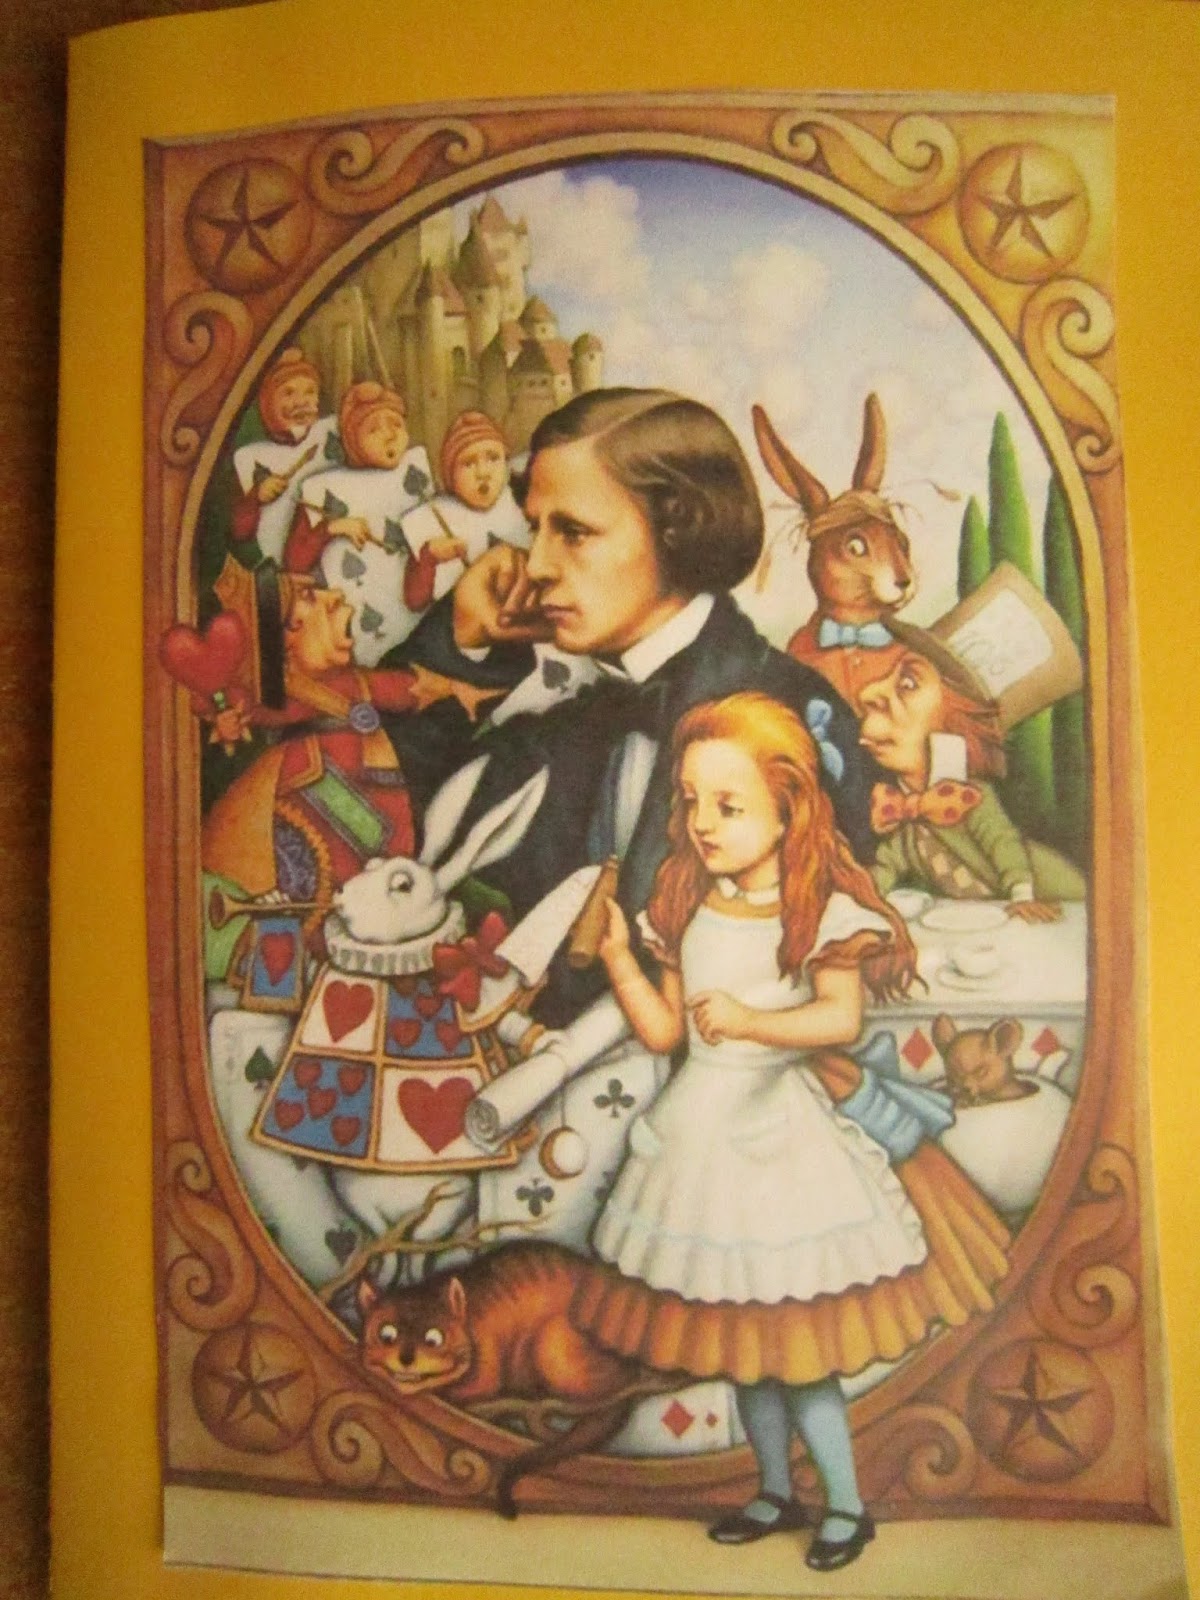 Сказку про алису в зазеркалье. Кэрролл Льюис "Алиса в стране чудес". Алиса. «Алиса в стране чудес» и «Алиса в Зазеркалье» Льюис Кэрролл. Льюис Керрол: «Алиса в стране чудес». Льюис Кэролл Алиса книга.